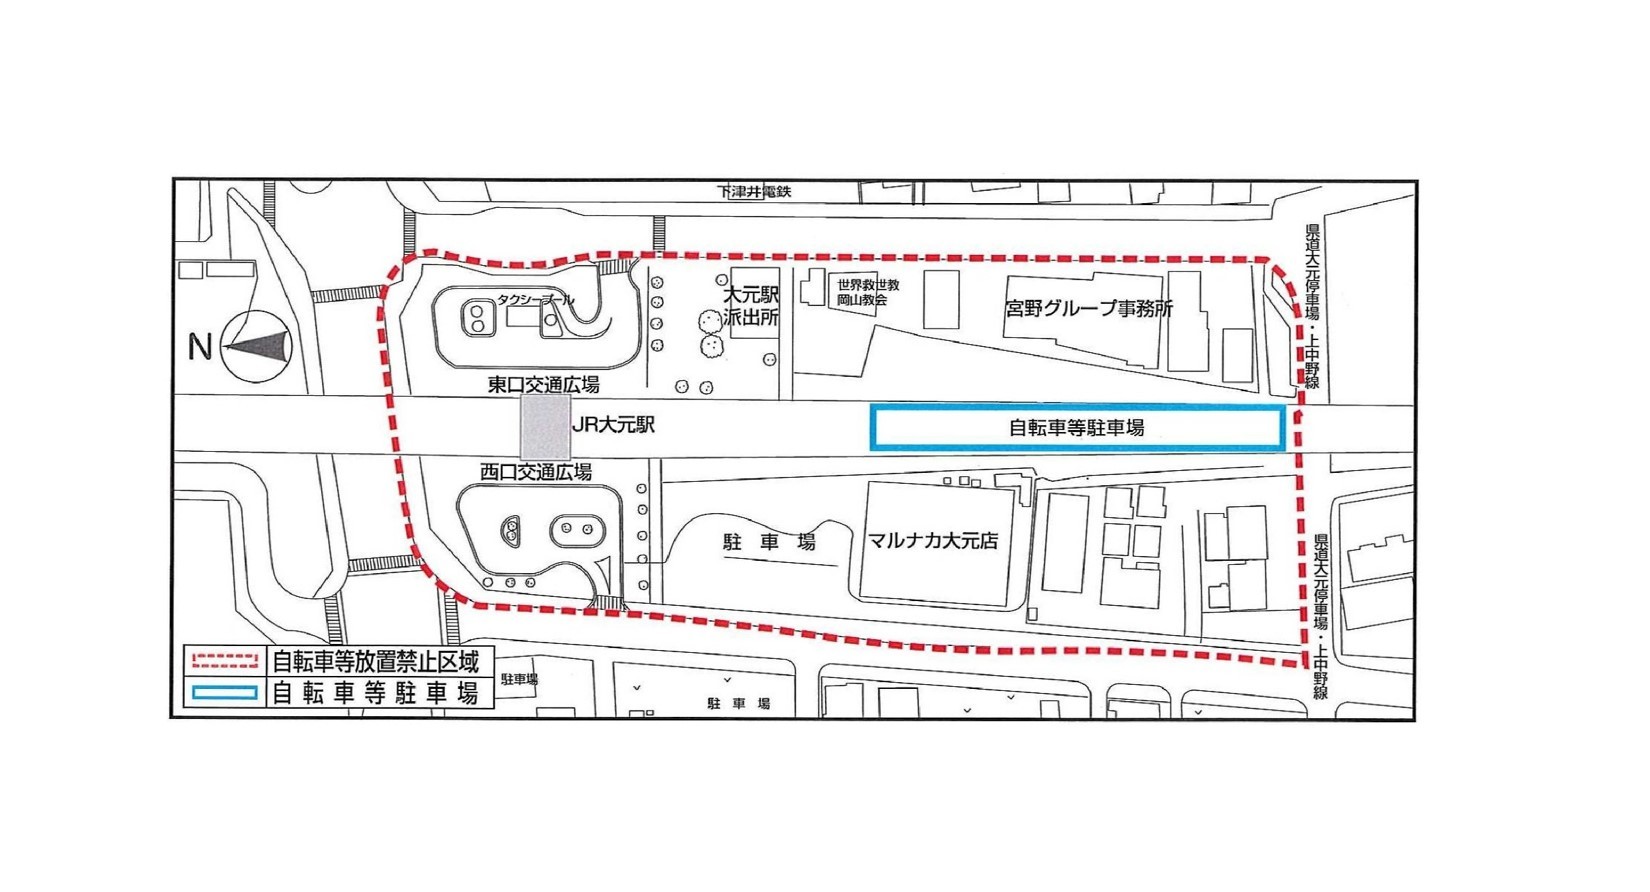 大元駅周辺の放置禁止区域並びに自転車等駐車場の位置図